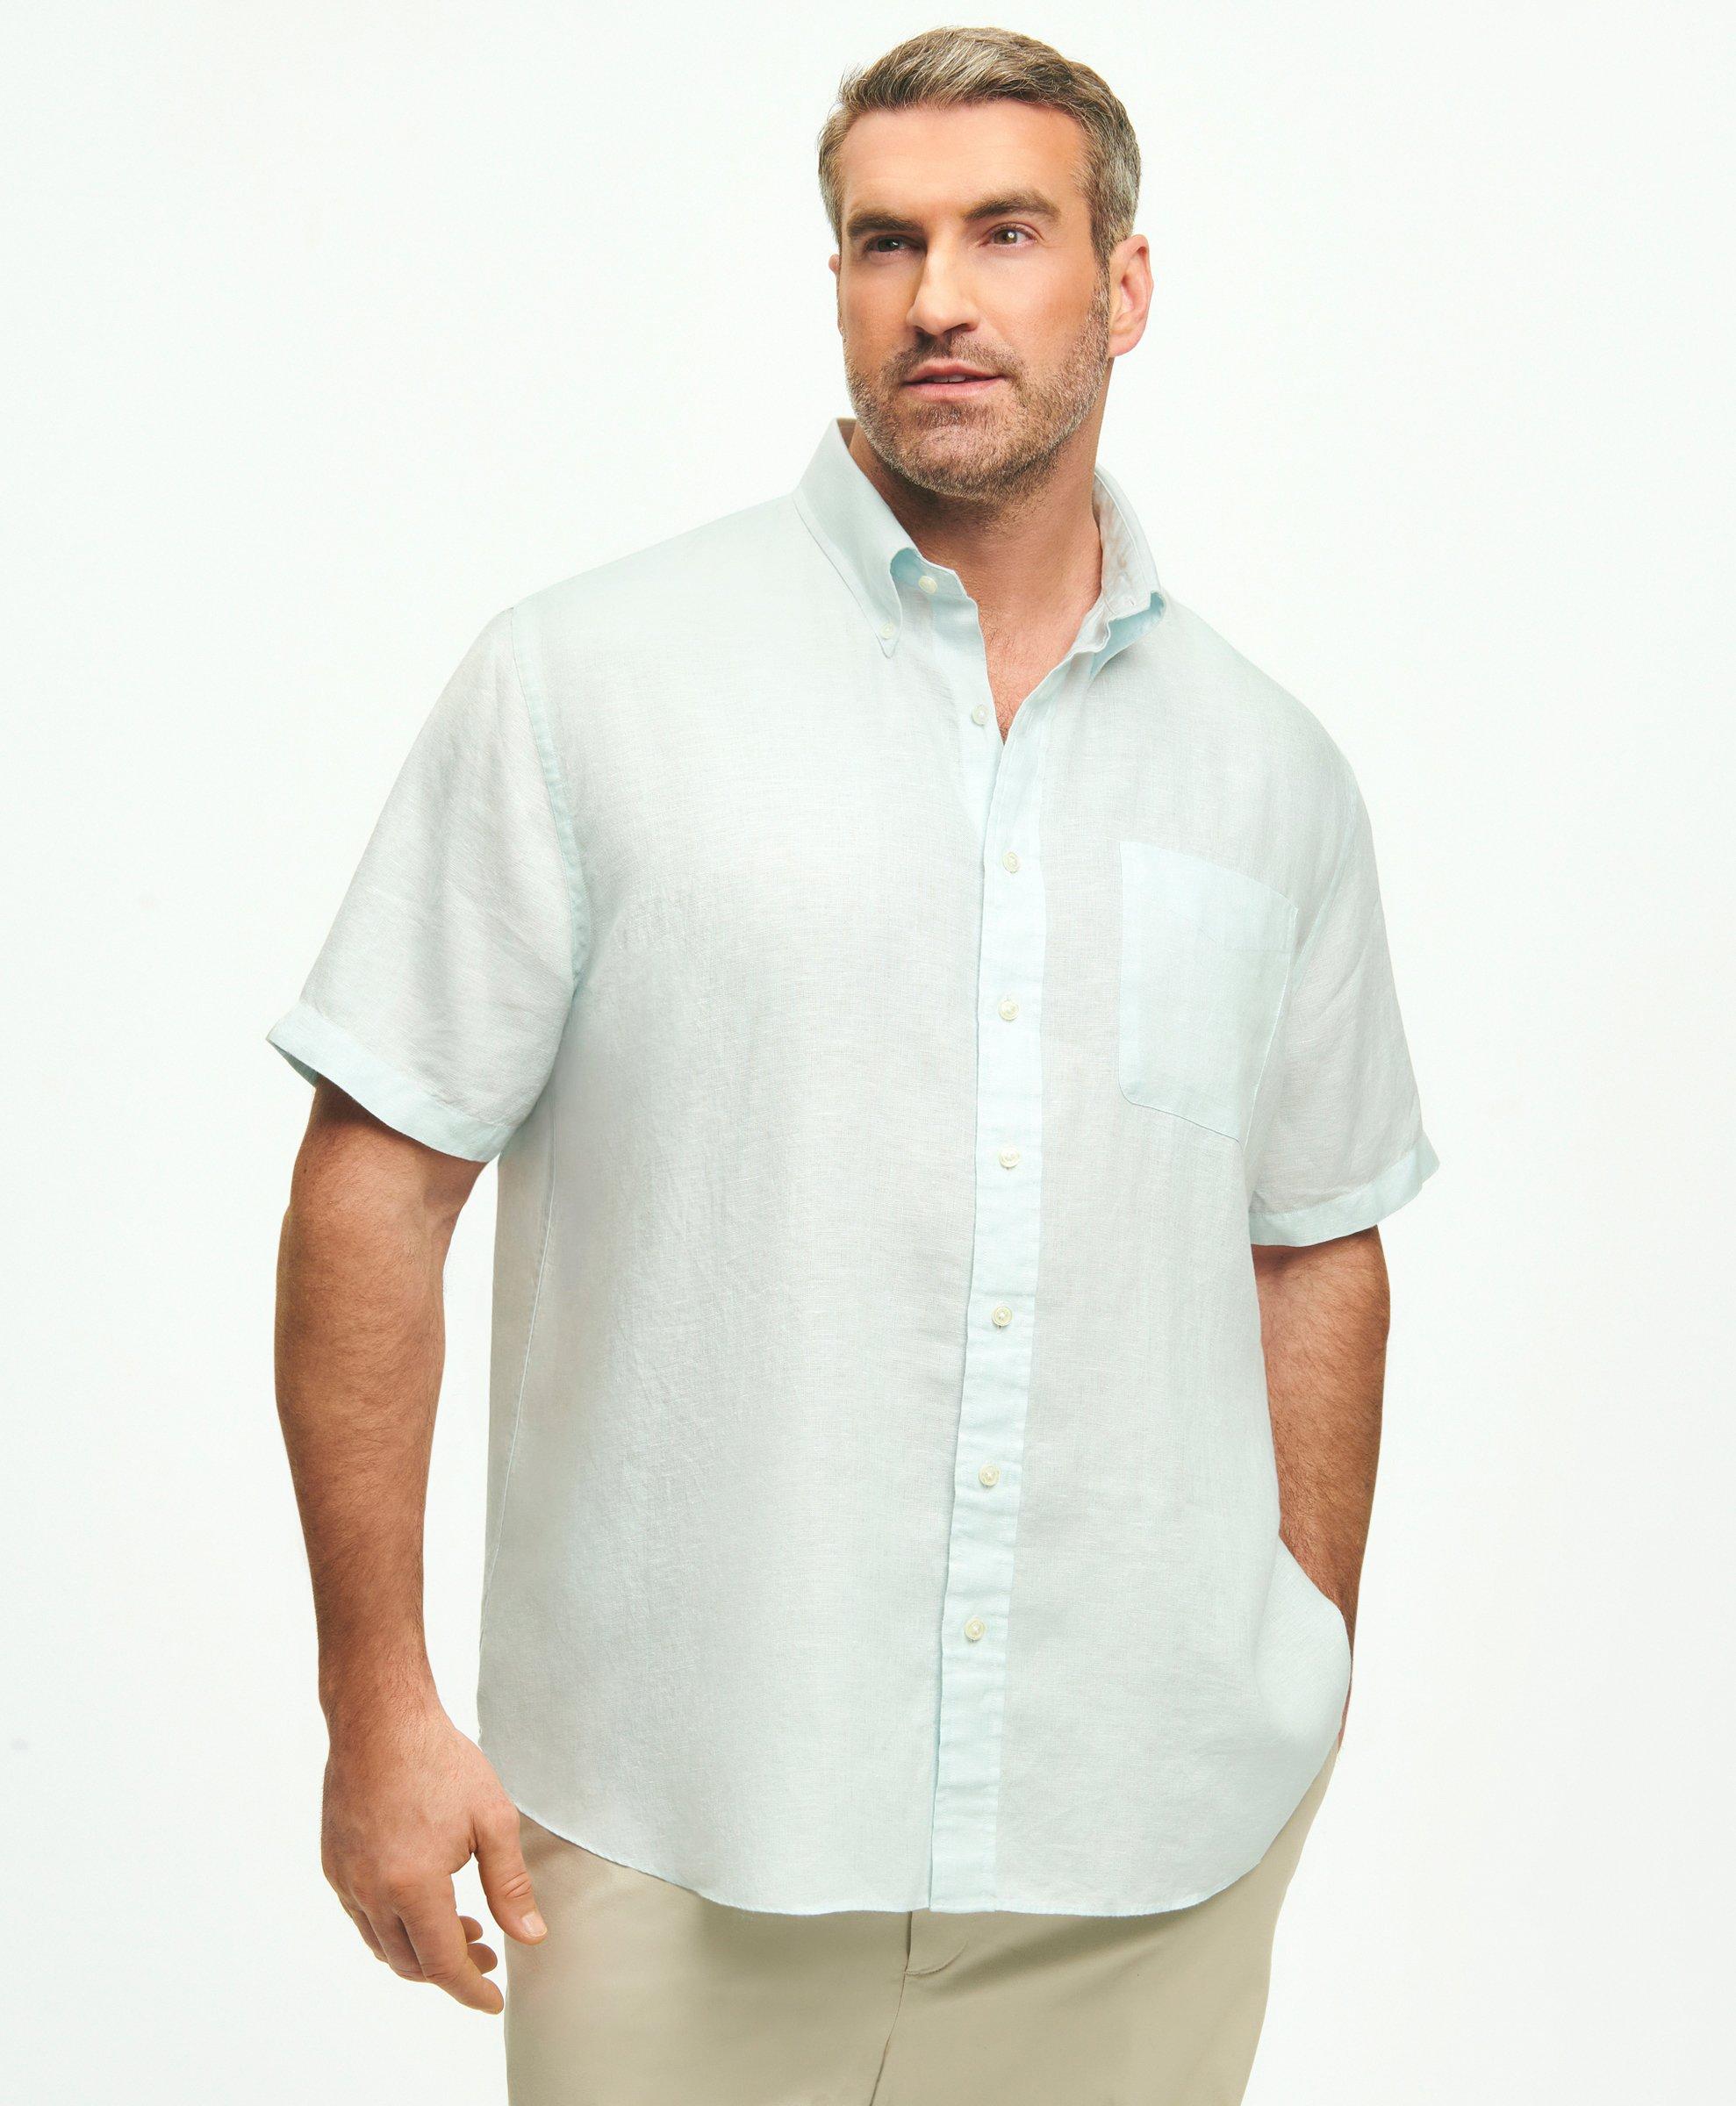 Brooks Brothers Big & Tall Sport Shirt, Short-sleeve Irish Linen | Aqua | Size 4x Tall